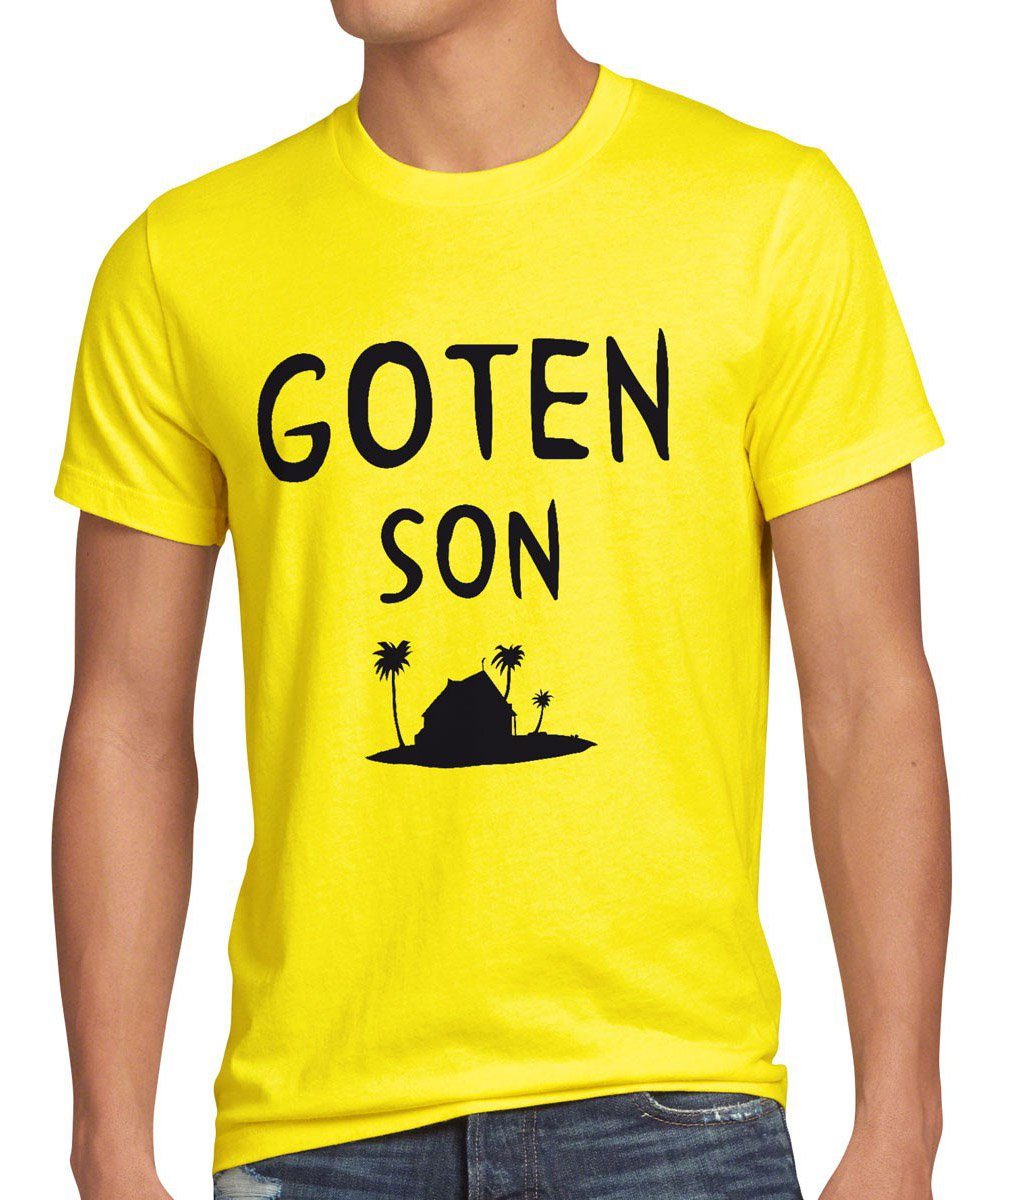 Nummer 1 Sonderpreis! style3 Print-Shirt Herren T-Shirt Goten Vegeta Roshi Anime Ball Super Fan Manga Goku Son Z Dragon